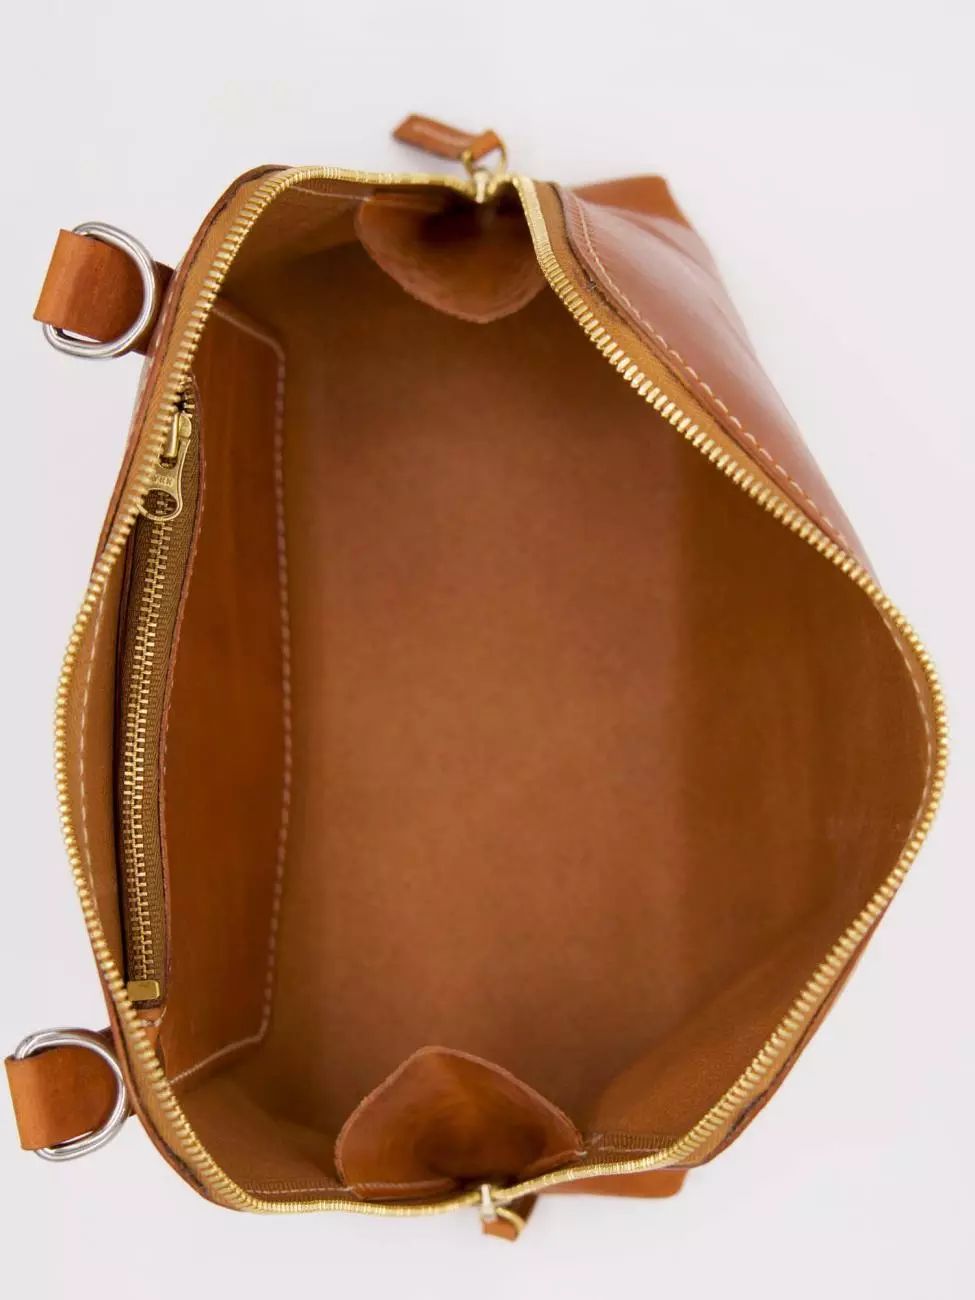 9 - Shoulder bag for women